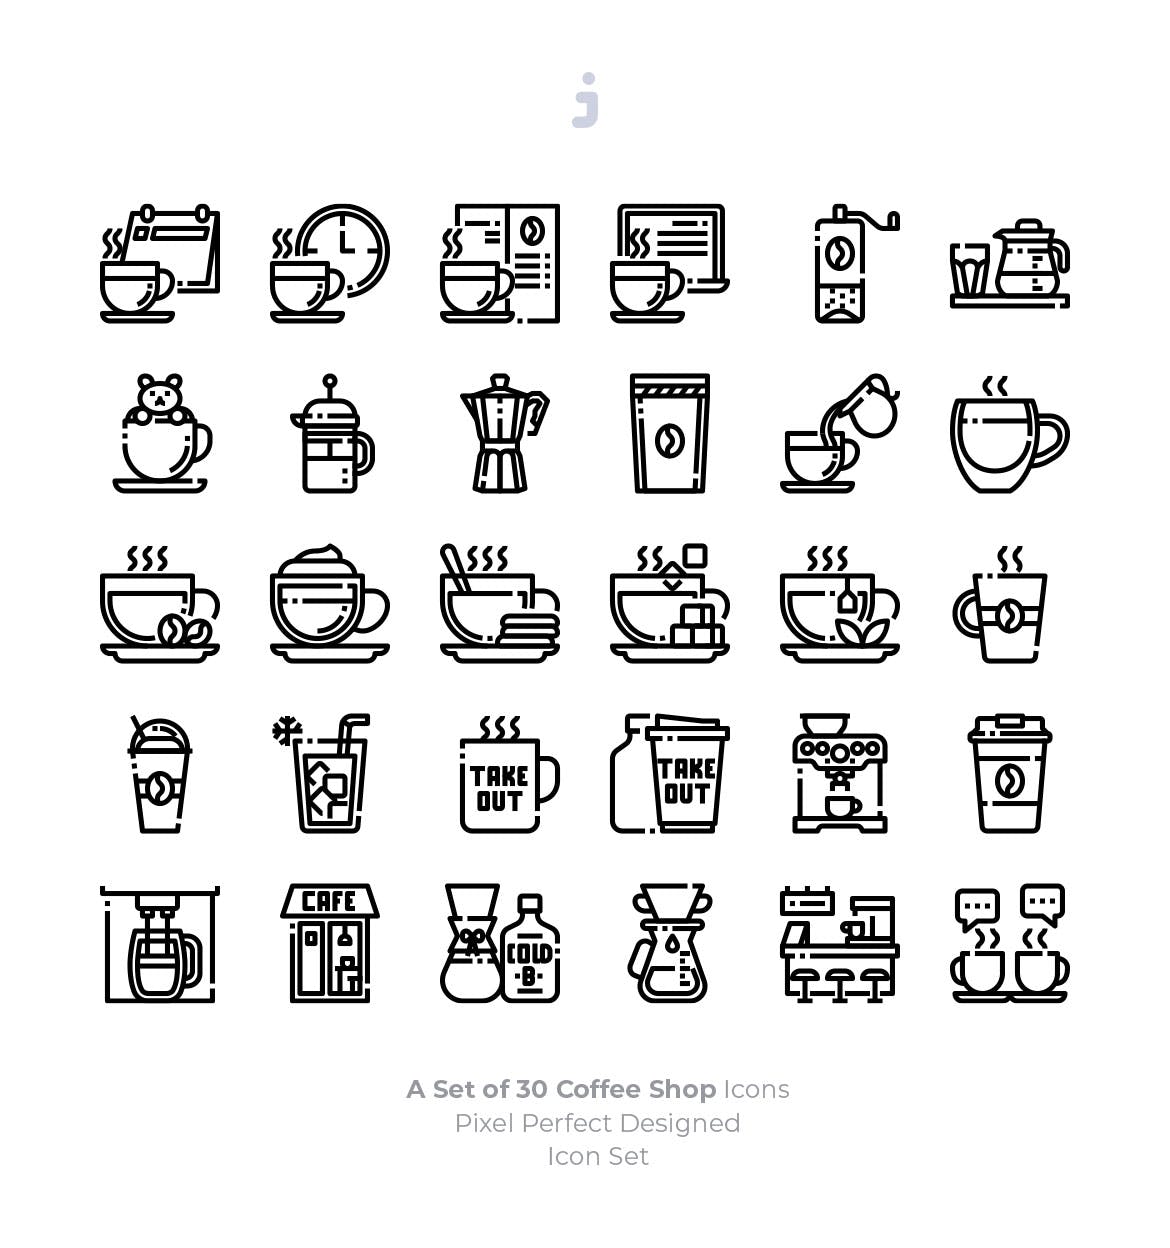 30枚咖啡/咖啡店矢量素材库精选图标素材 30 Coffee Shop Icons插图(2)